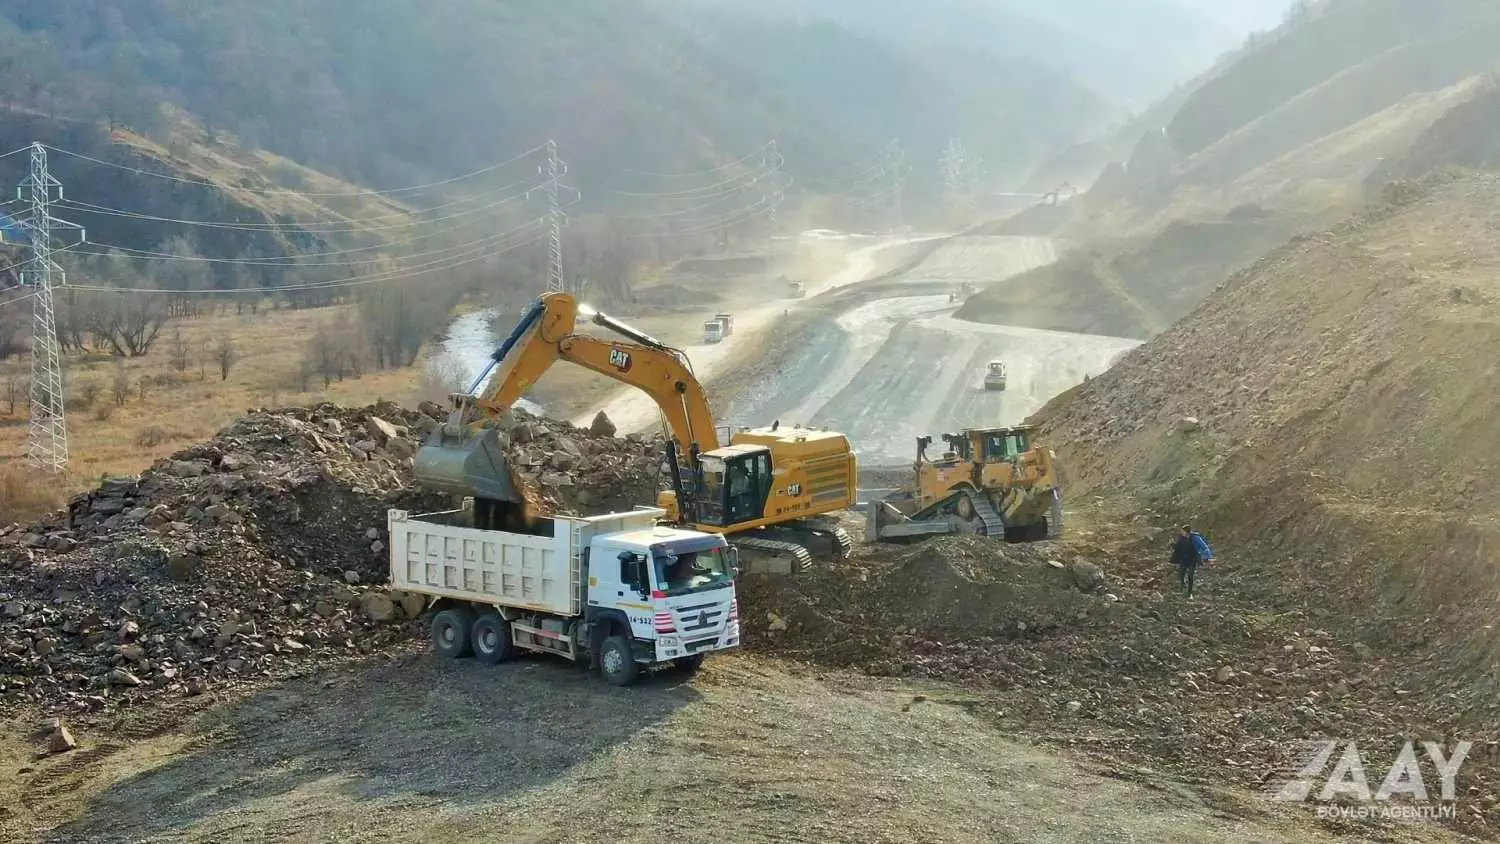 Kəlbəcər-Laçın avtomobil yolunun inşası davam etdirilir